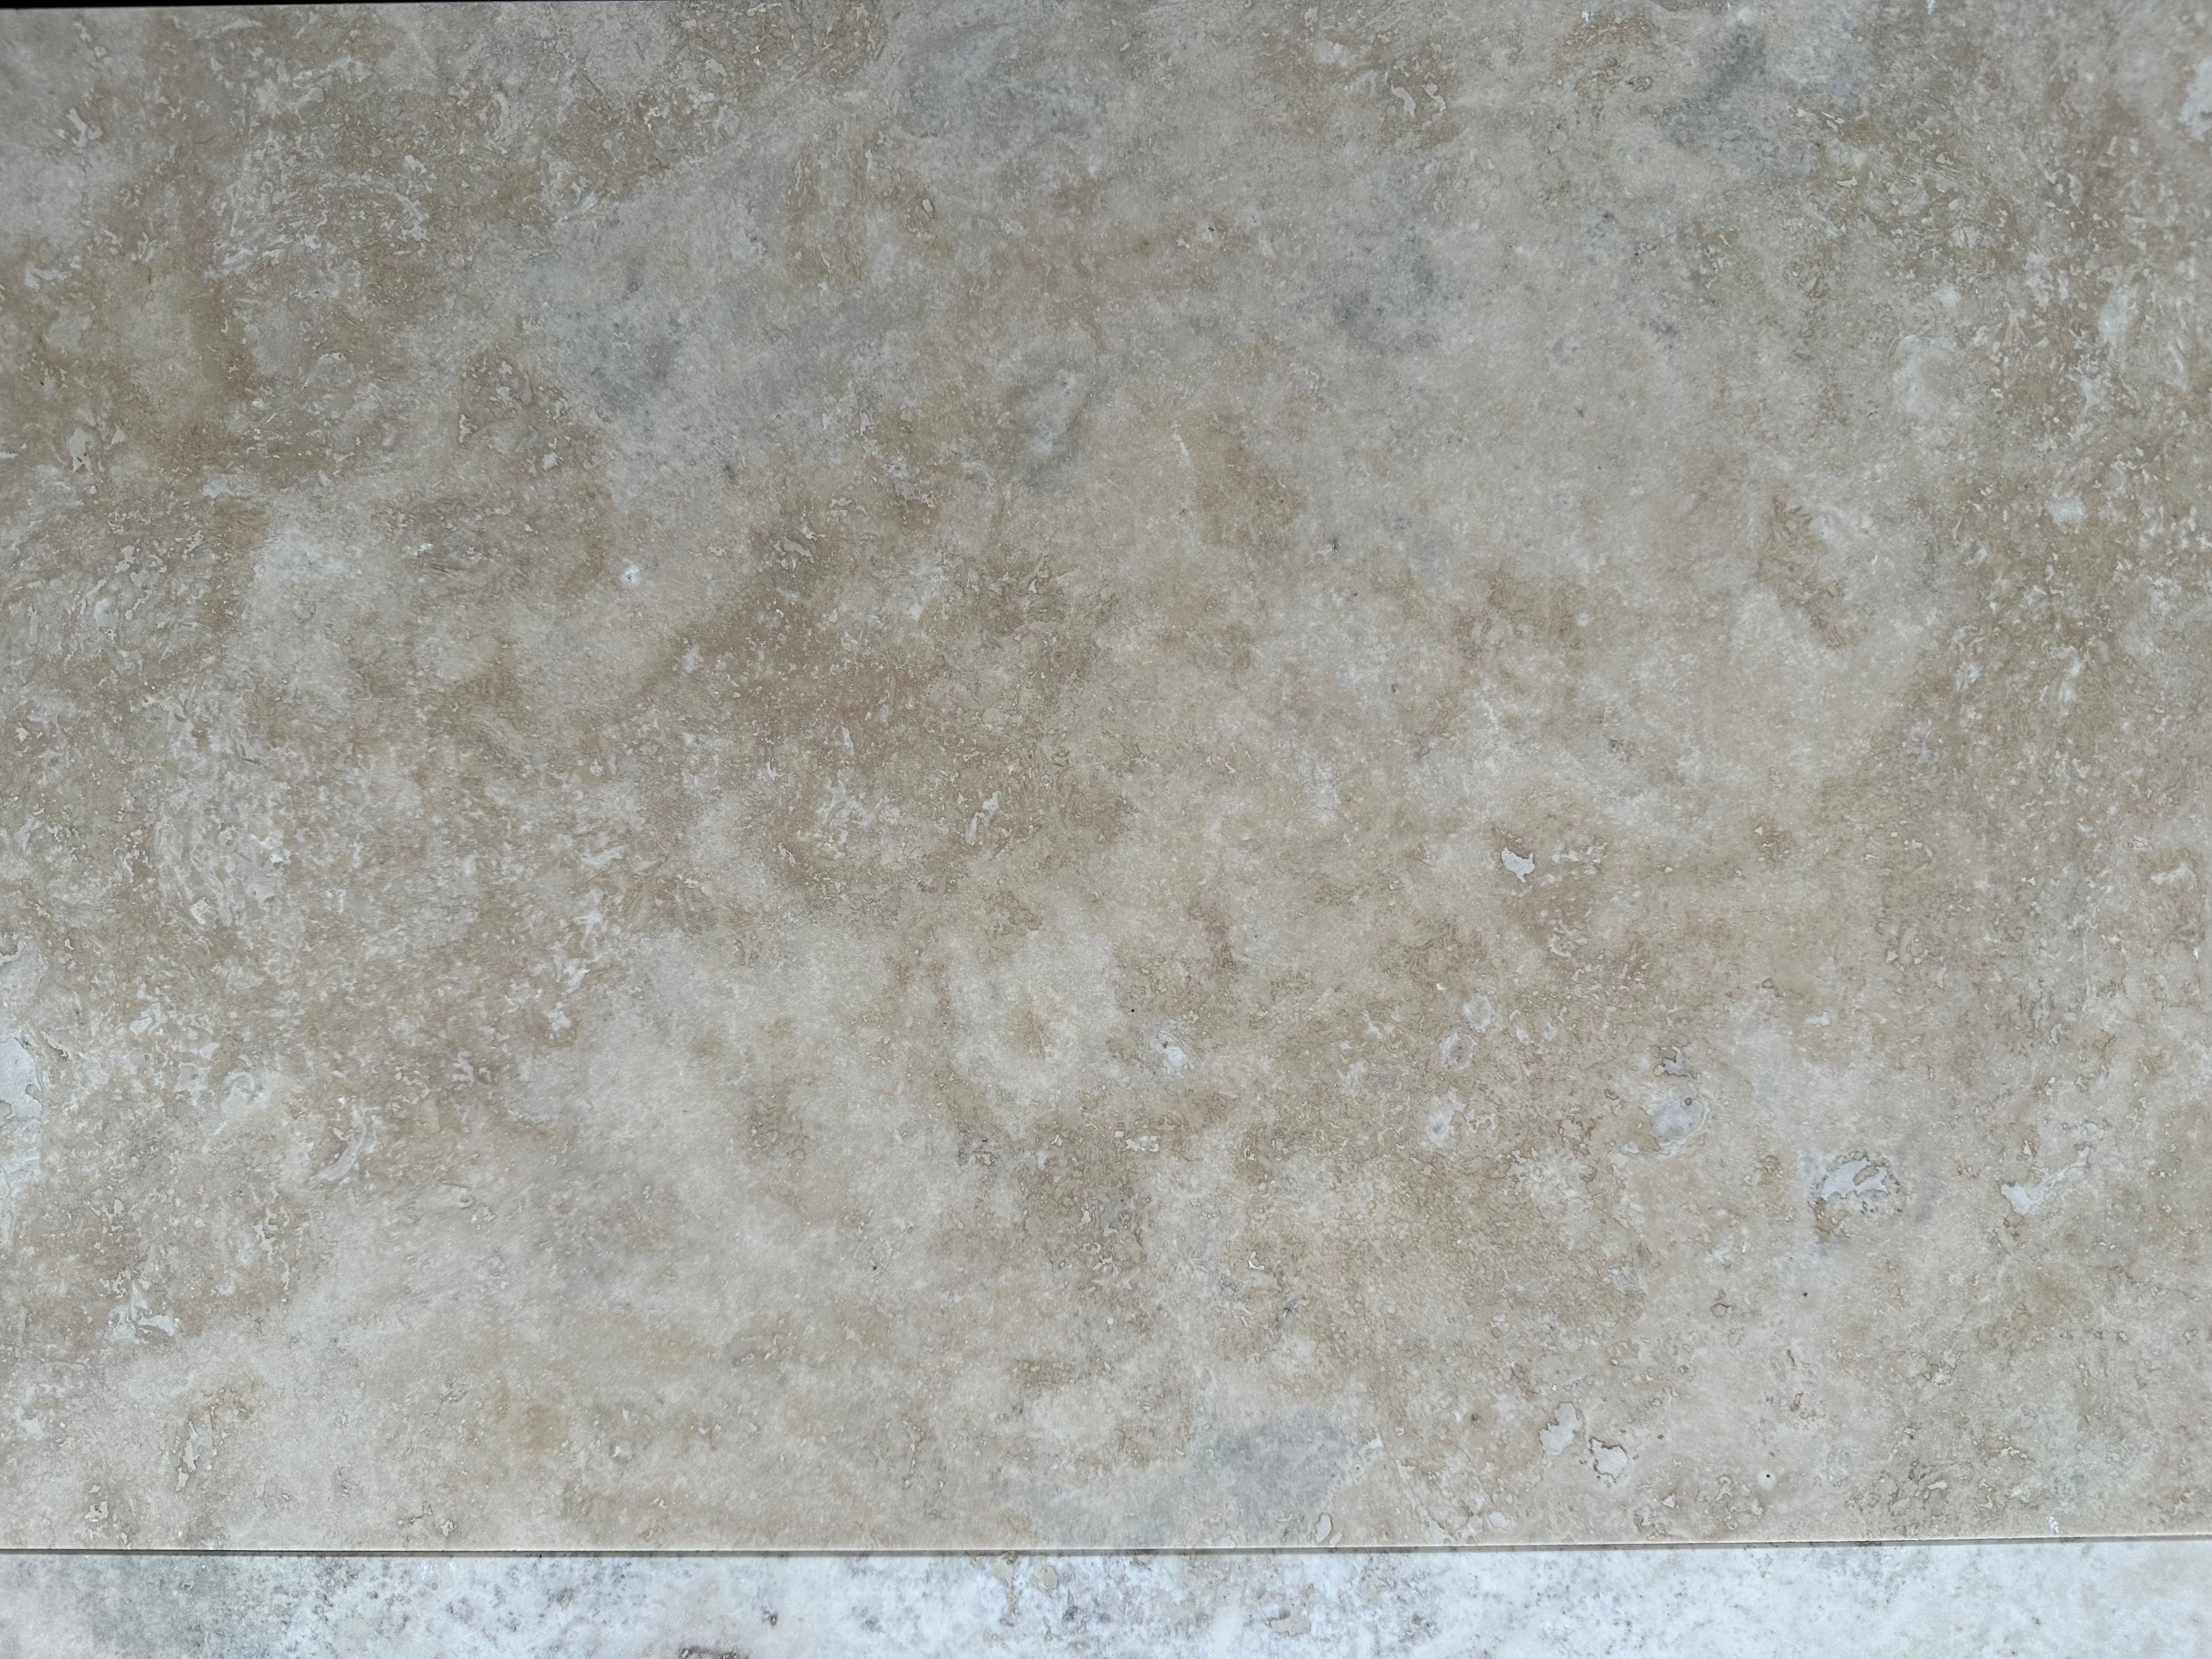 Travertine-Tile-Flooring-LILAC LIGHT Travertine honed/filled tile 24"x12"- Stone Supplier - Rocks in Stock